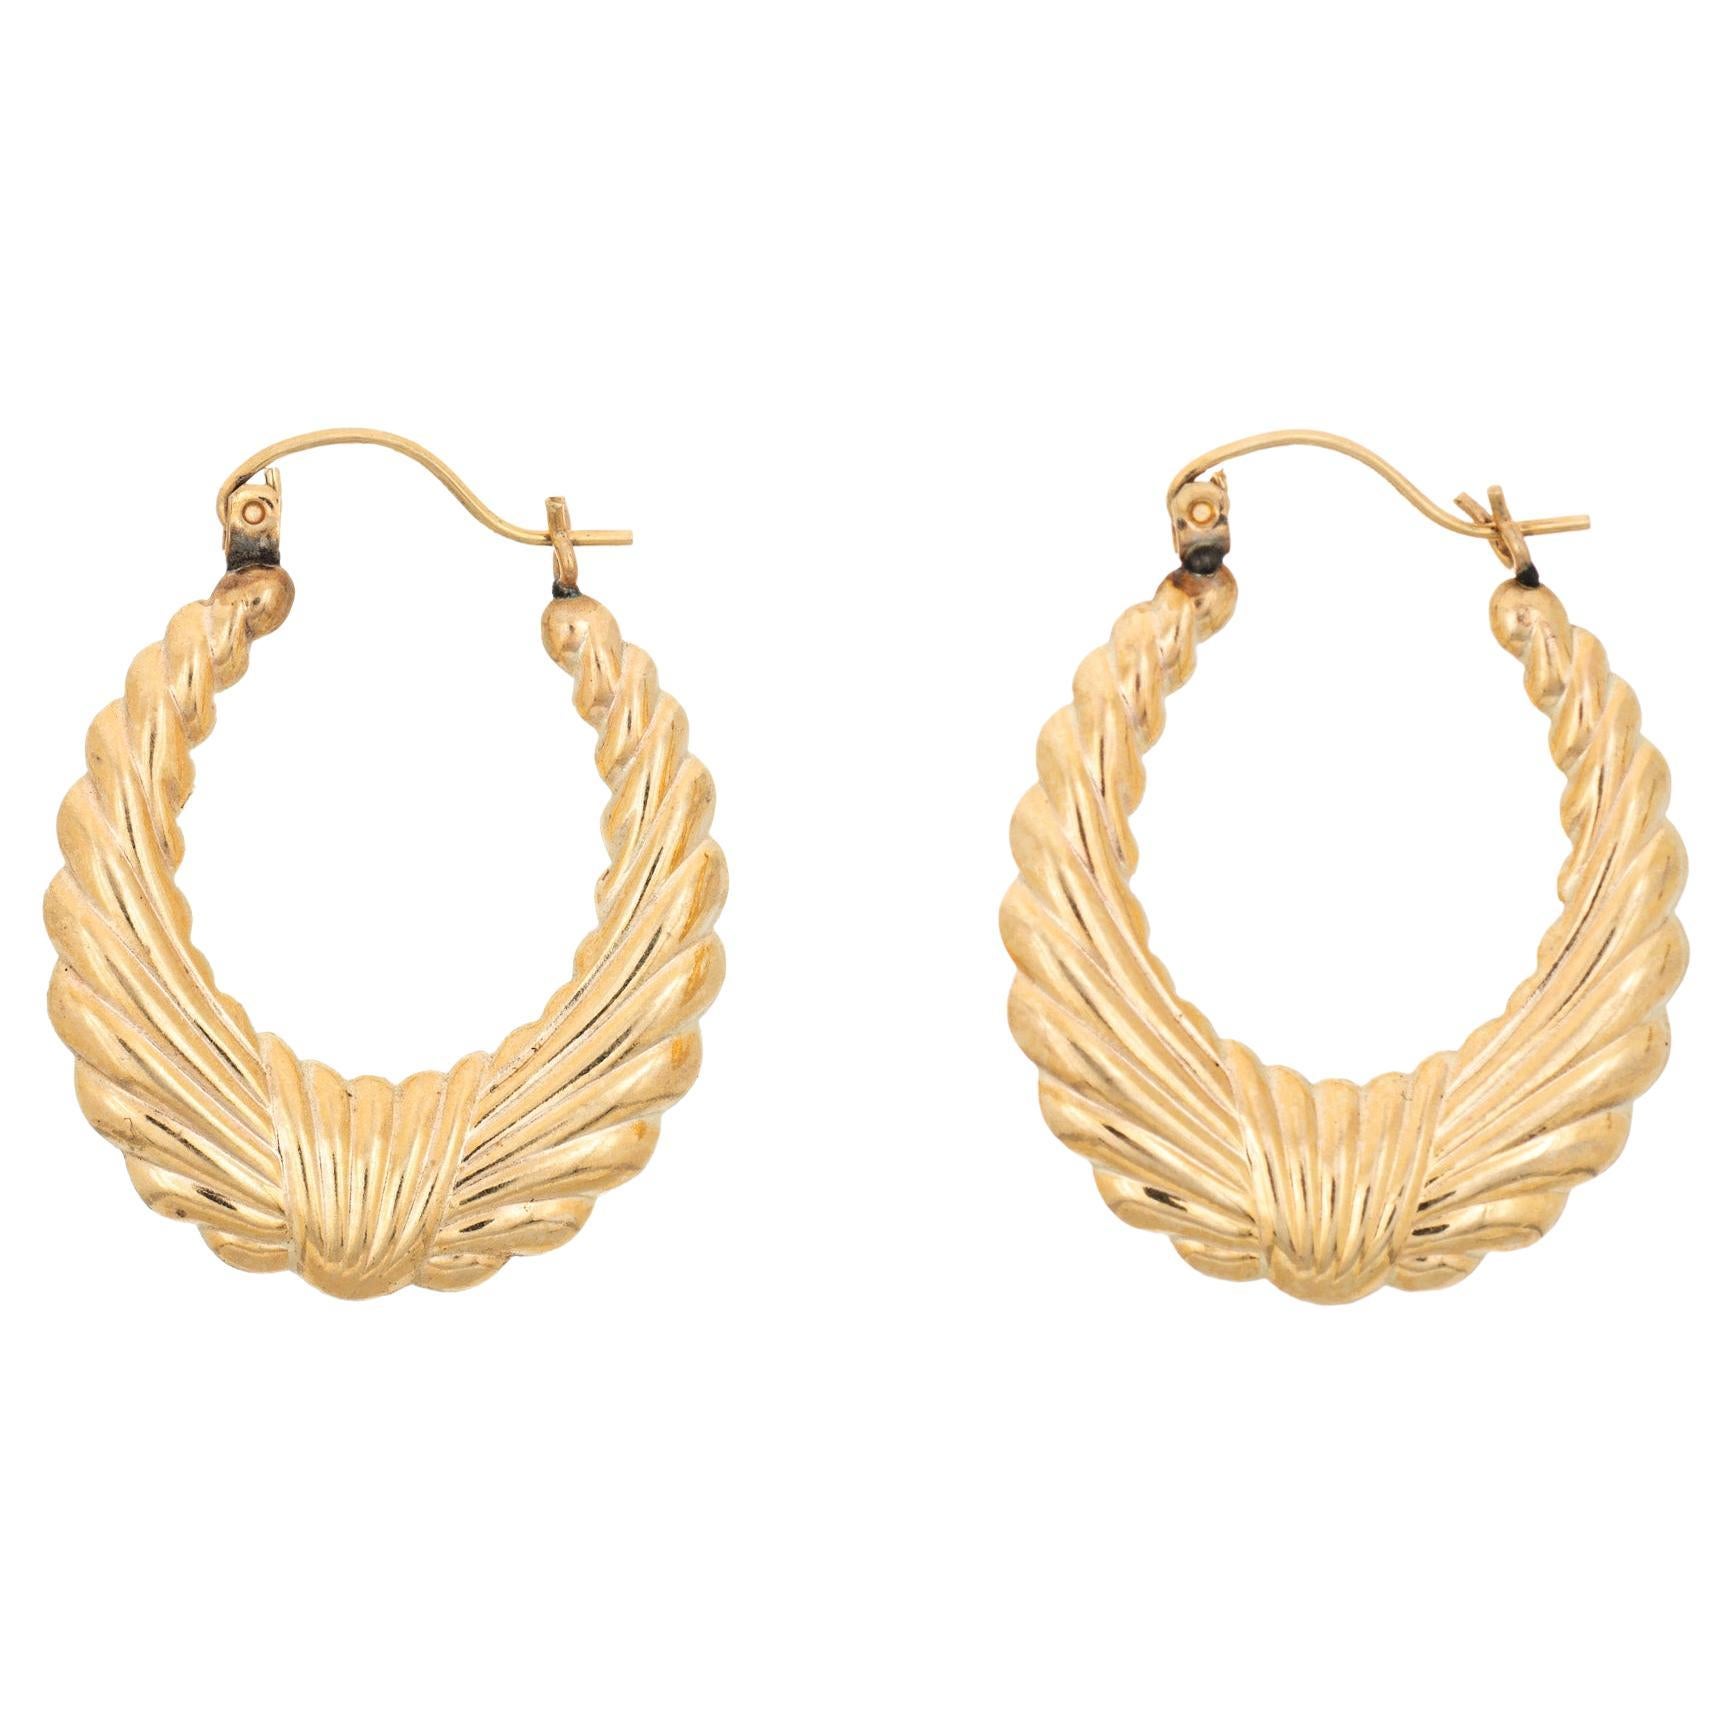 Vintage 14K Gold Amethyst Ball Hoop Earrings – Boylerpf